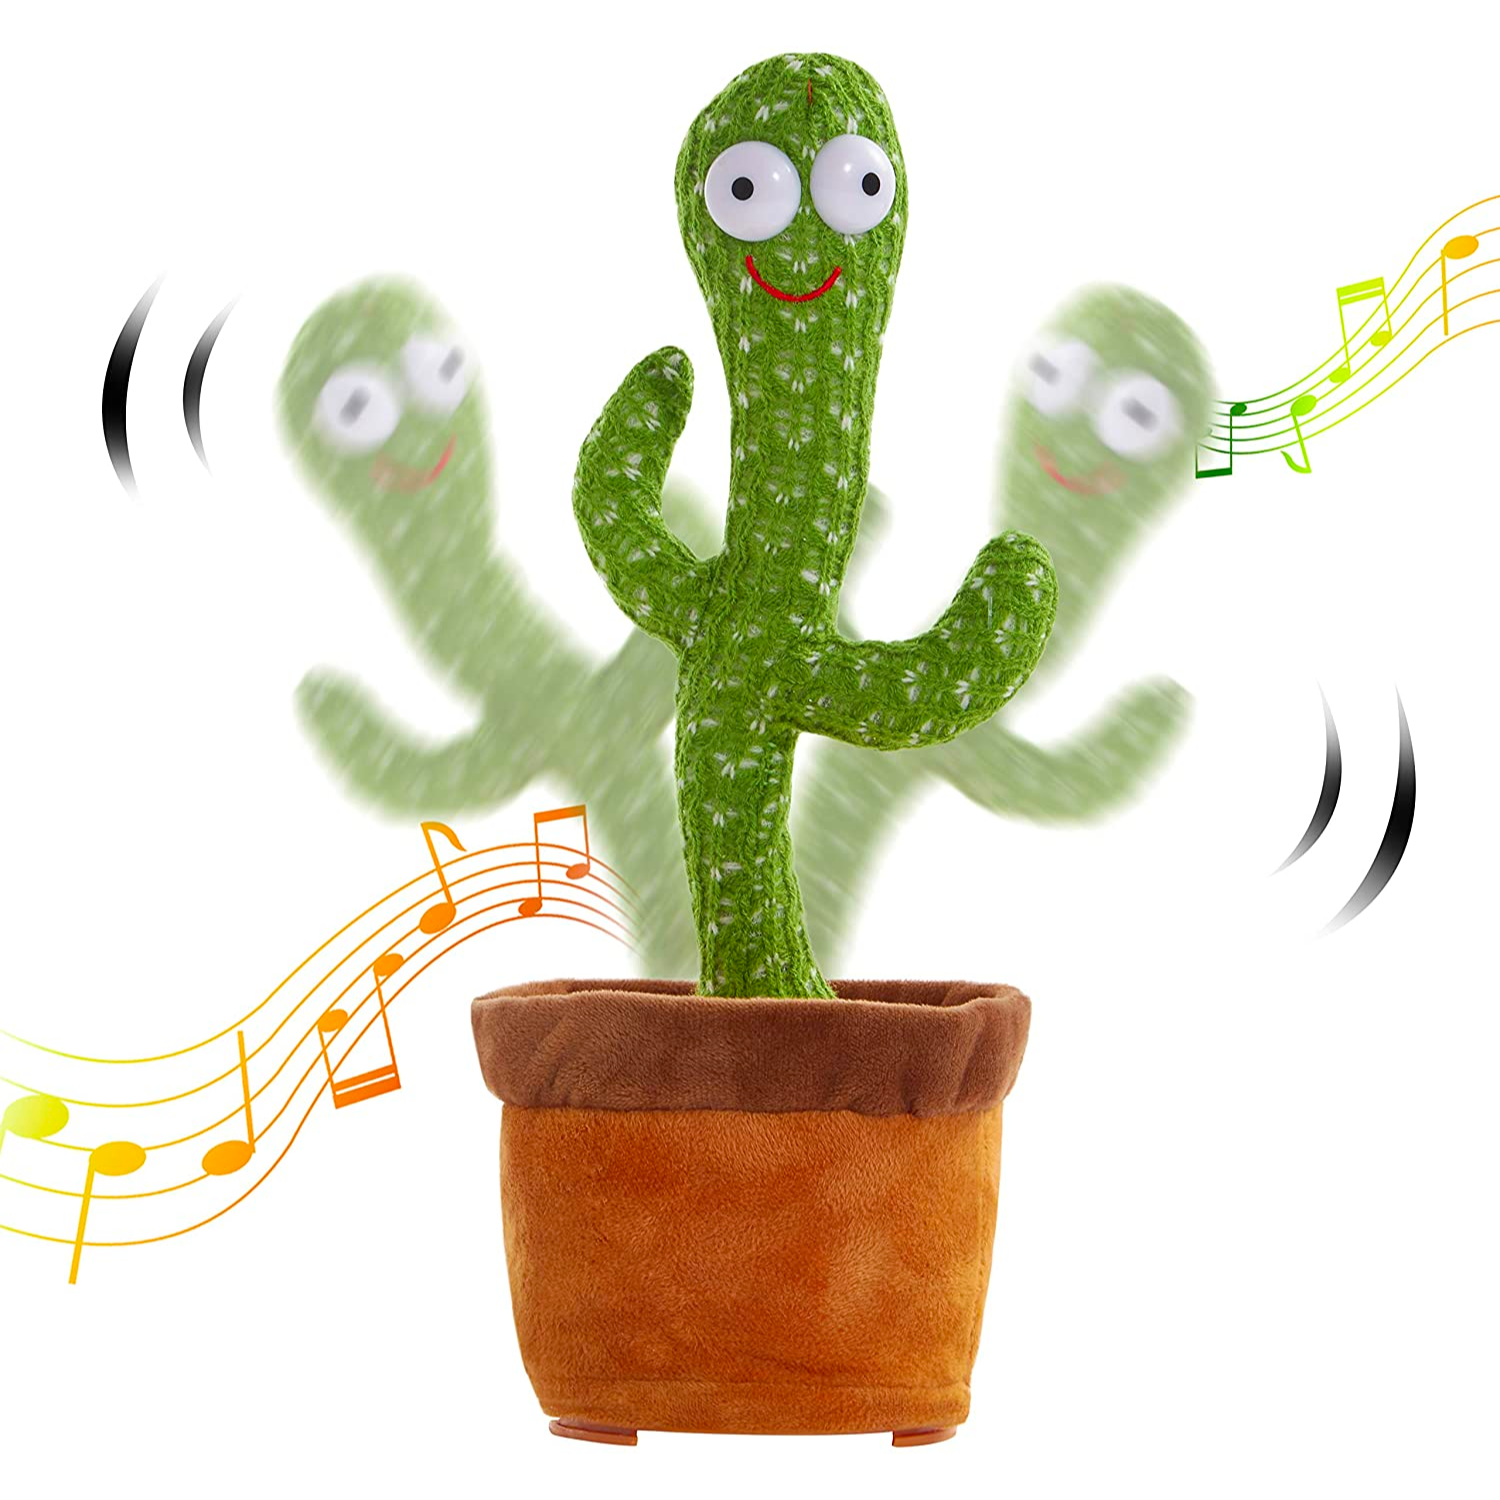 original talking cactus toy